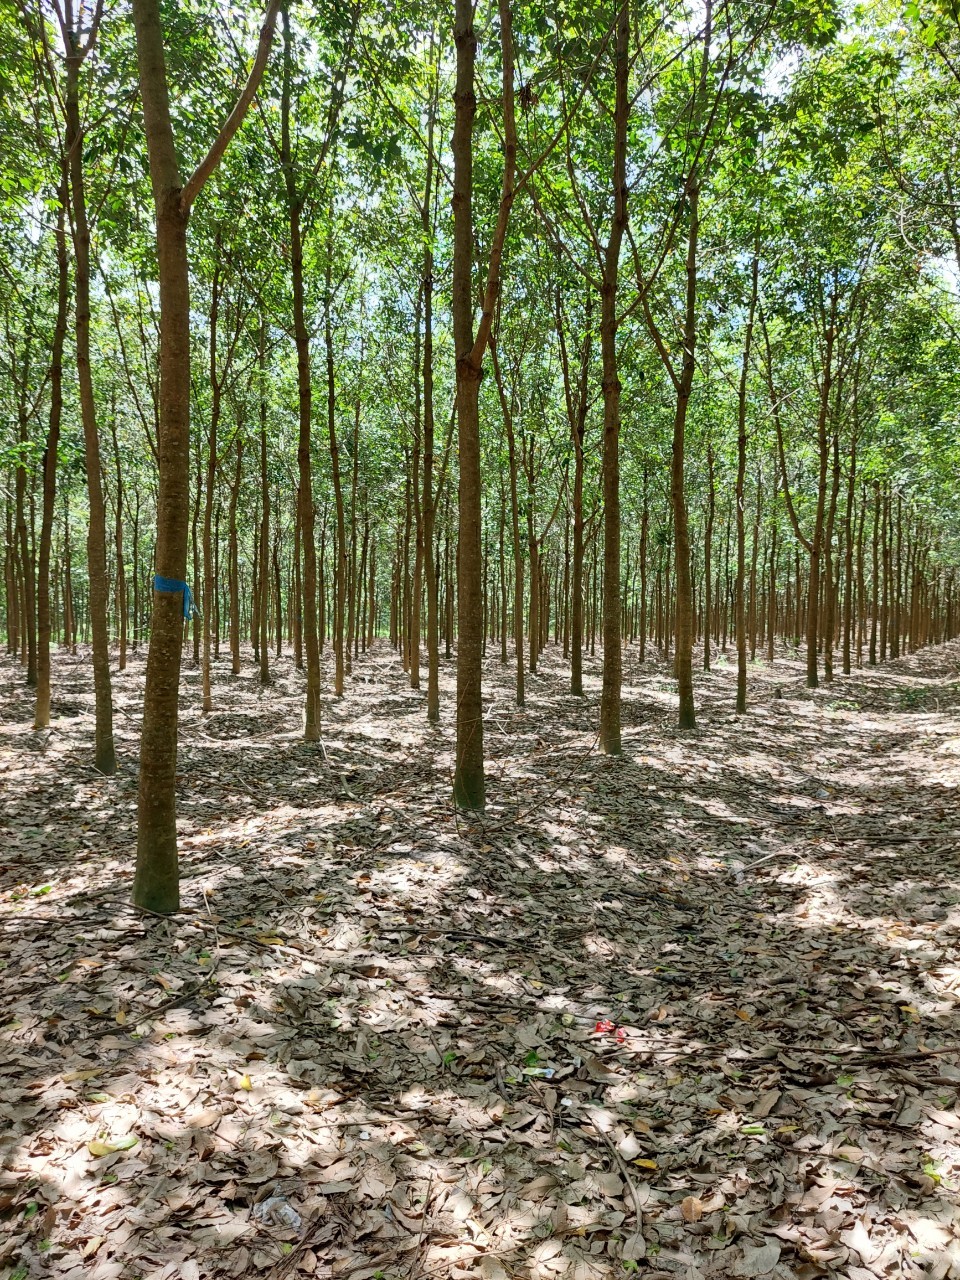 Bán 5.7 ha đất trồng cây lâu năm tại xã Minh Thạnh, Dầu tiếng, Bình Dương